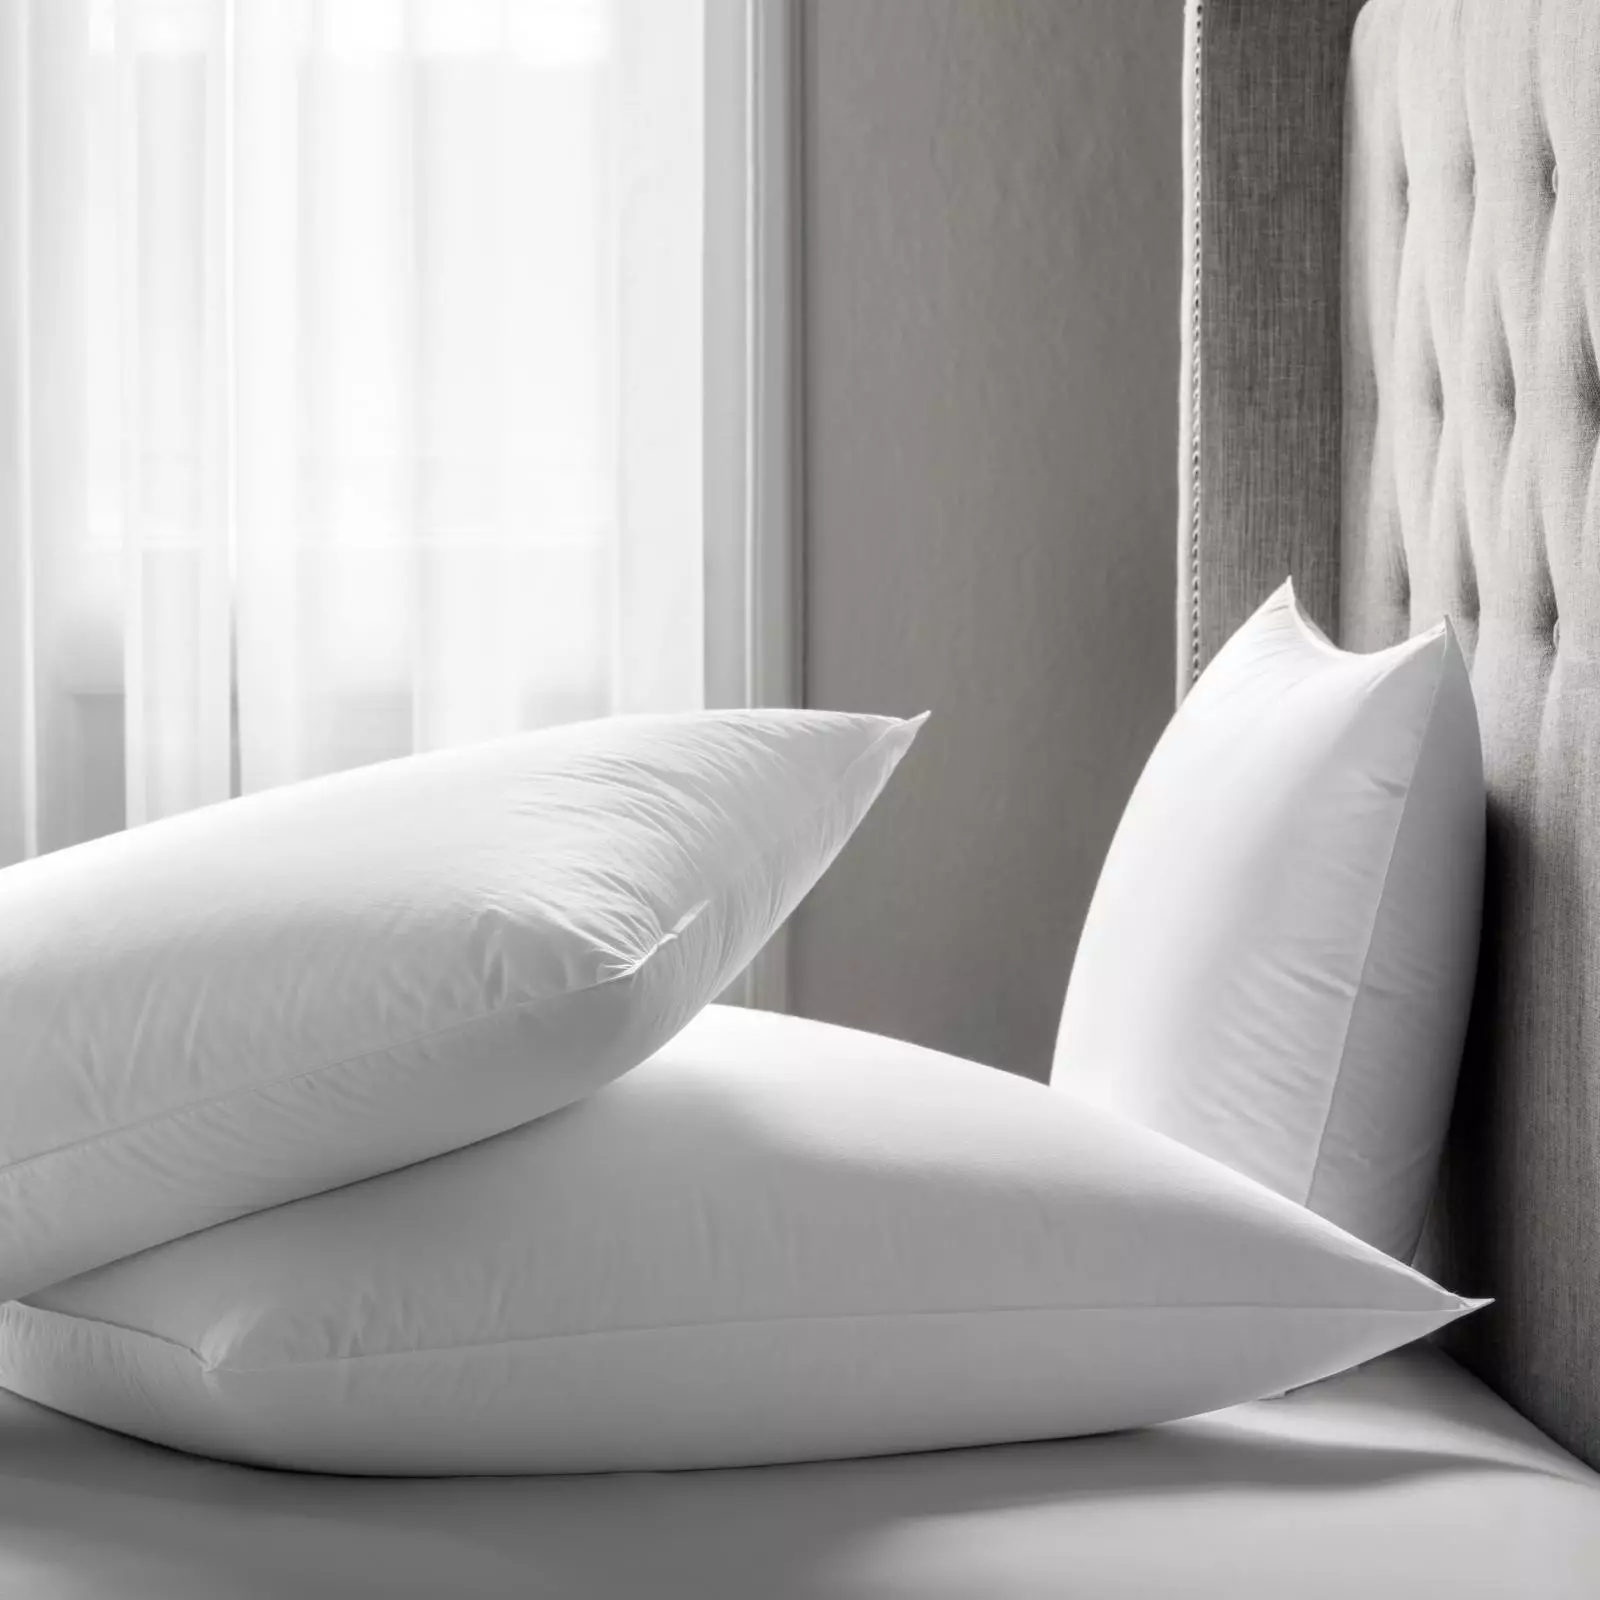 Calificación Almohadas para dormir: ¿Qué mejor según las revisiones? Los principales fabricantes. ¿Cómo elegir la almohada más cómoda? 8844_32